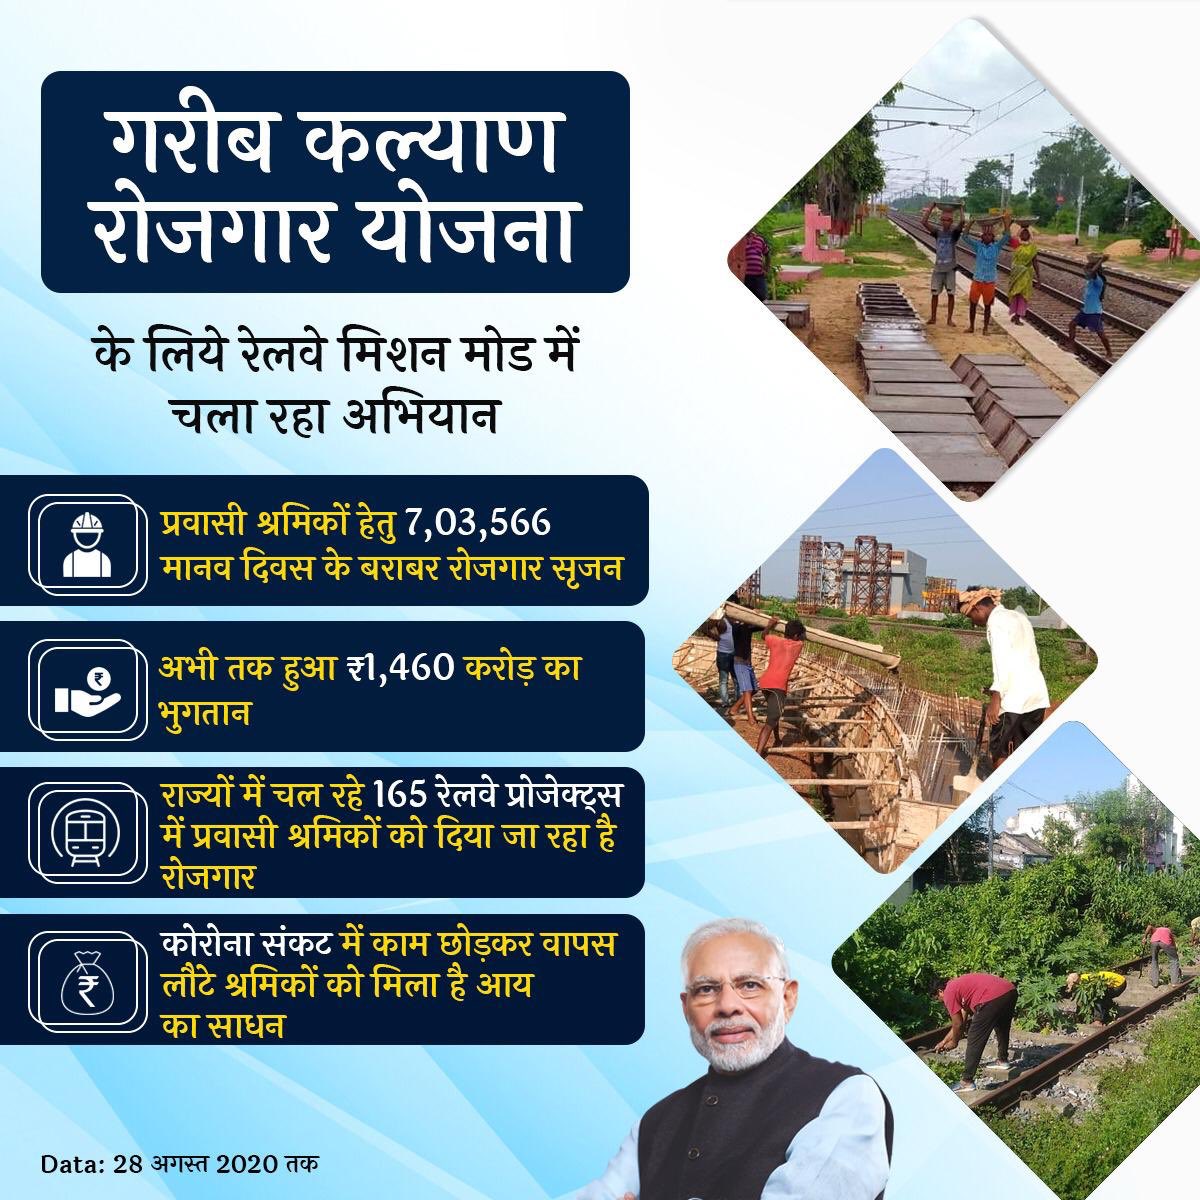 प्रधानमंत्री @NarendraModi जी द्वारा प्रवासी मज़दूरों को रोज़गार देने हेतु चलाई गयी #GaribKalyanRozgarYojana के लिए रेलवे मिशन मोड में चला रहा अभियान 

विभिन्न राज्यों में चल रहे 165 रेलवे प्रोजेक्ट्स में अब तक 7 लाख से अधिक मानव दिवस के बराबर हुआ रोज़गार सृजन।